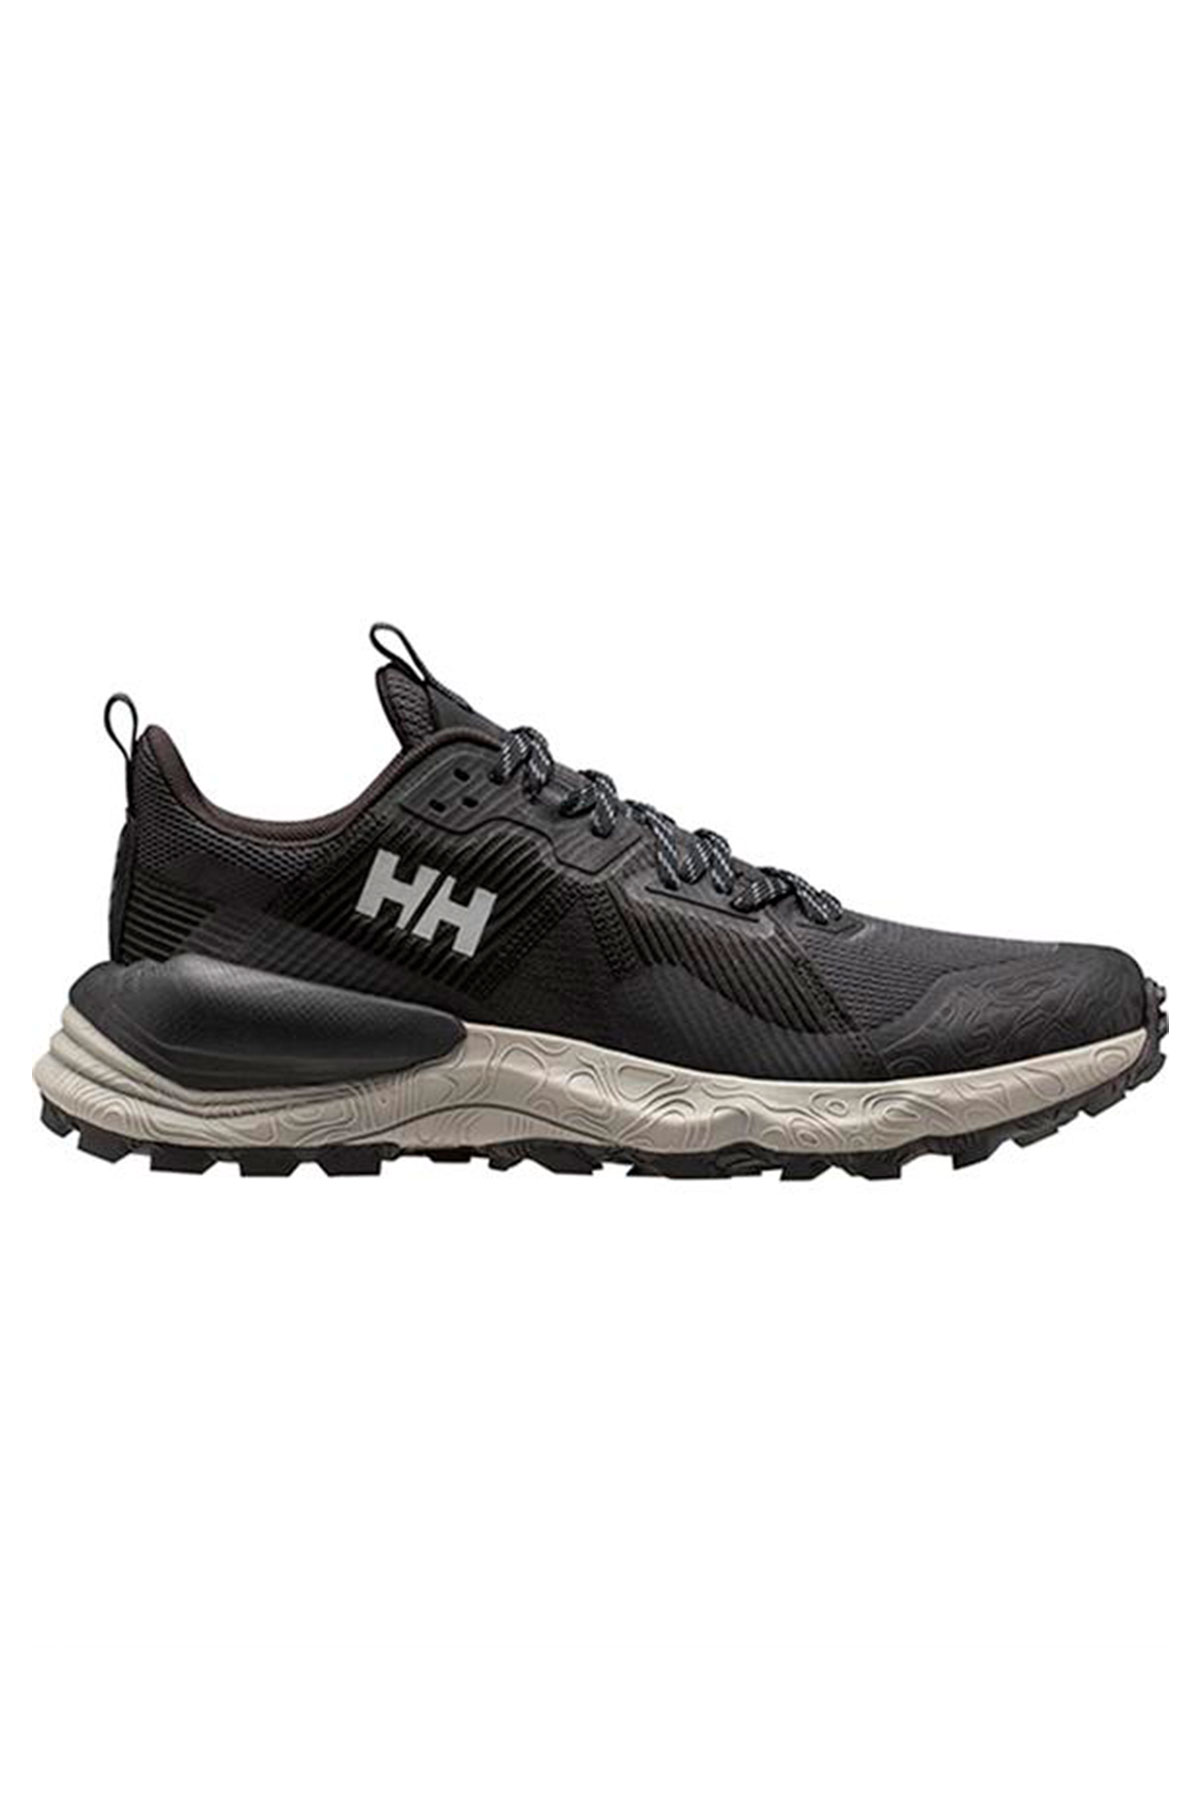 Helly Hansen Hawk Stapro Tr Siyah outdoor Ayakkabı 